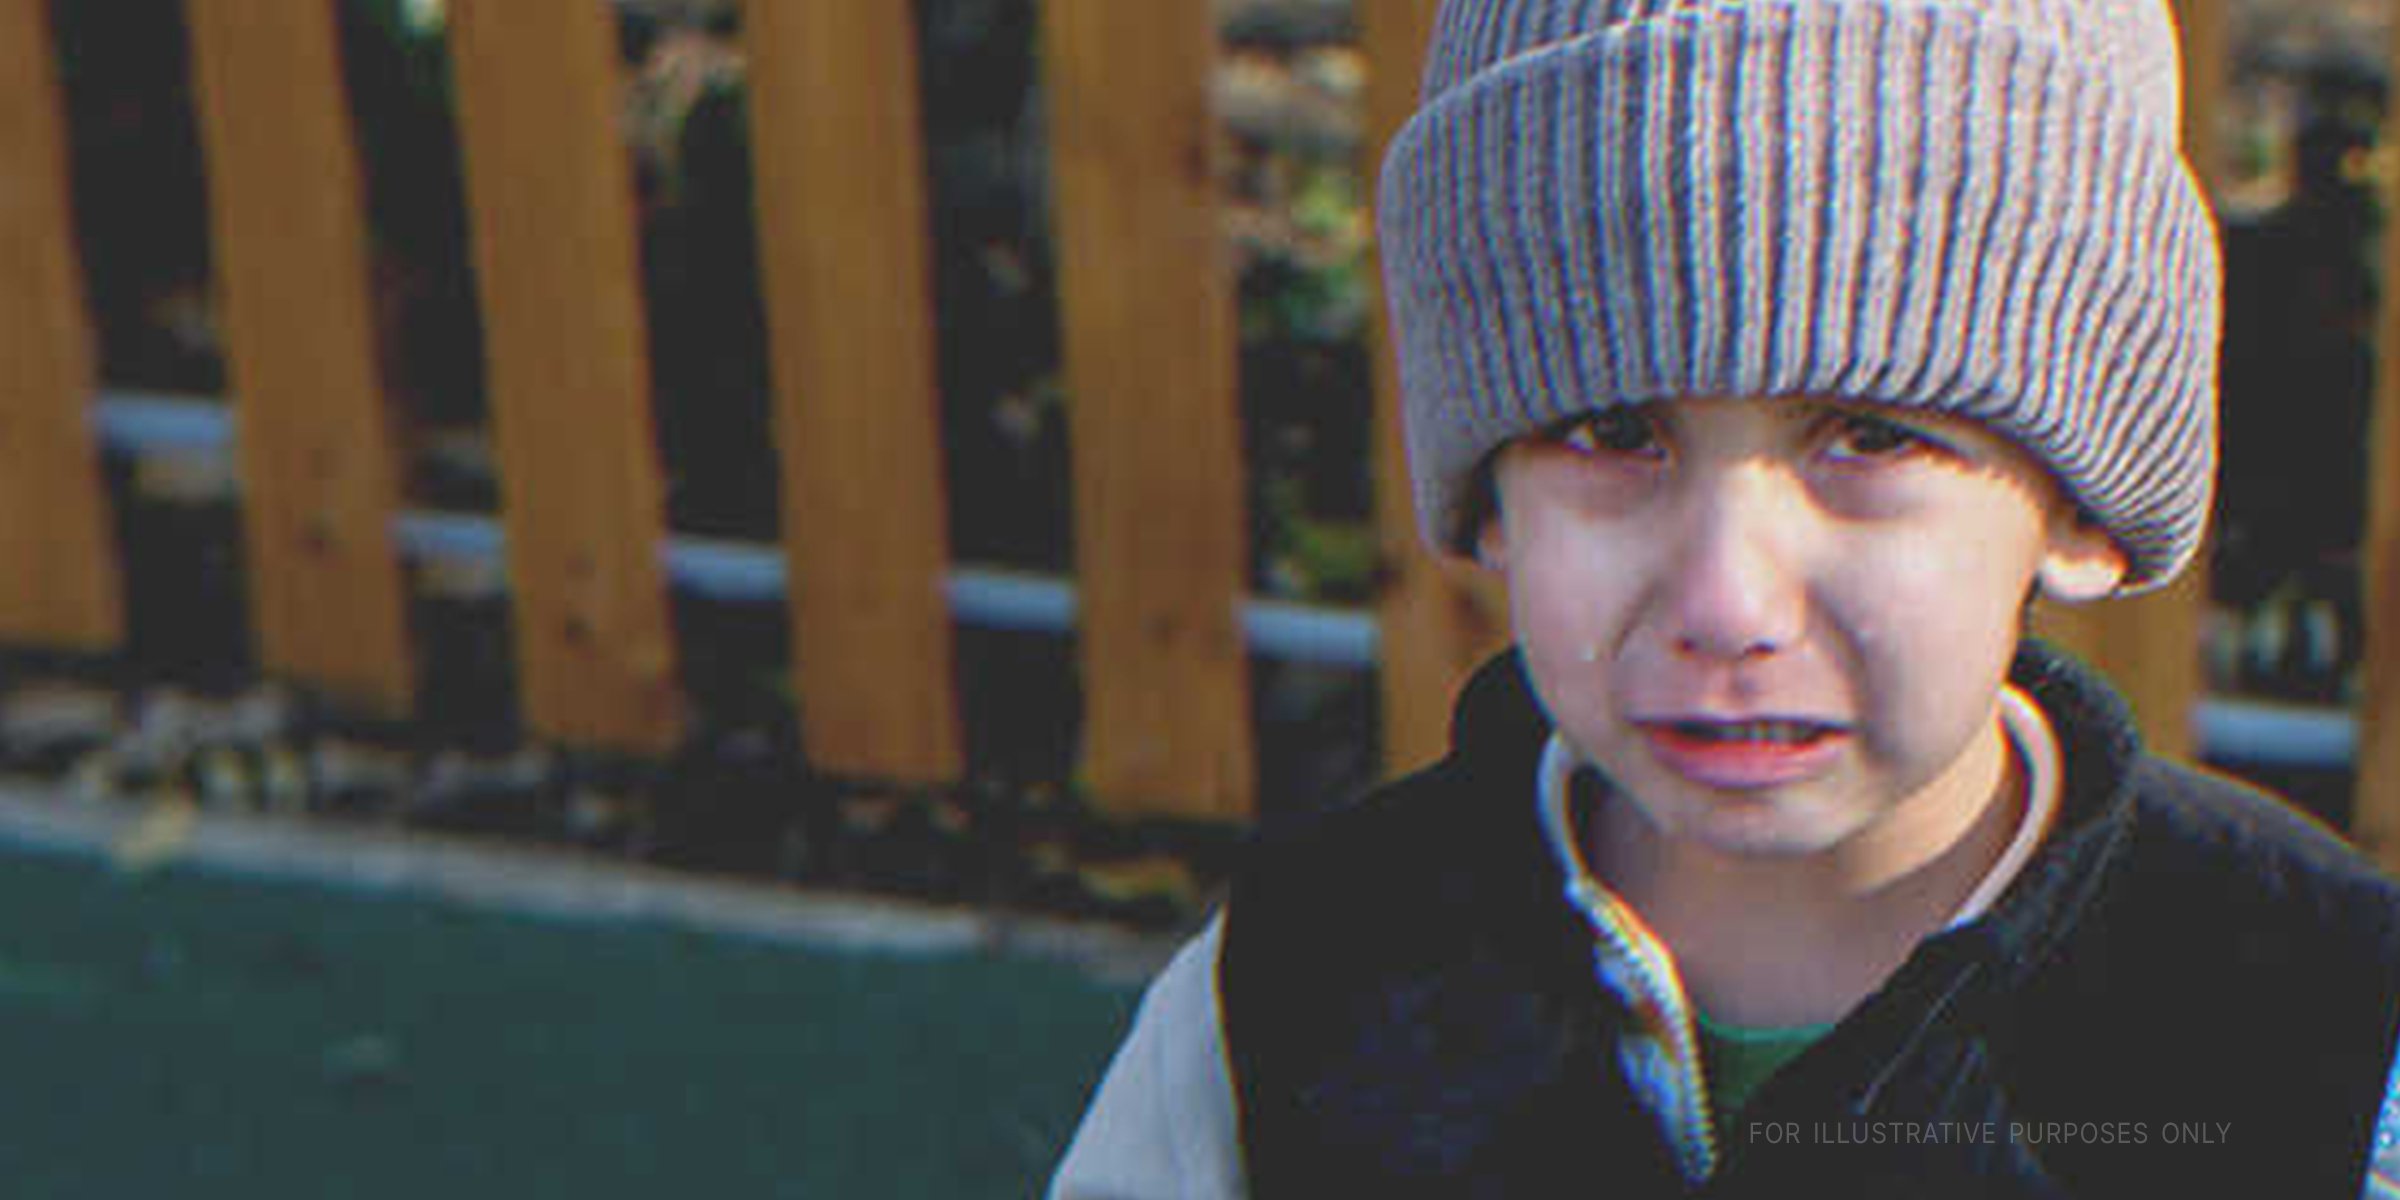 Jeune garçon en train de pleurer | Source : Shutterstock